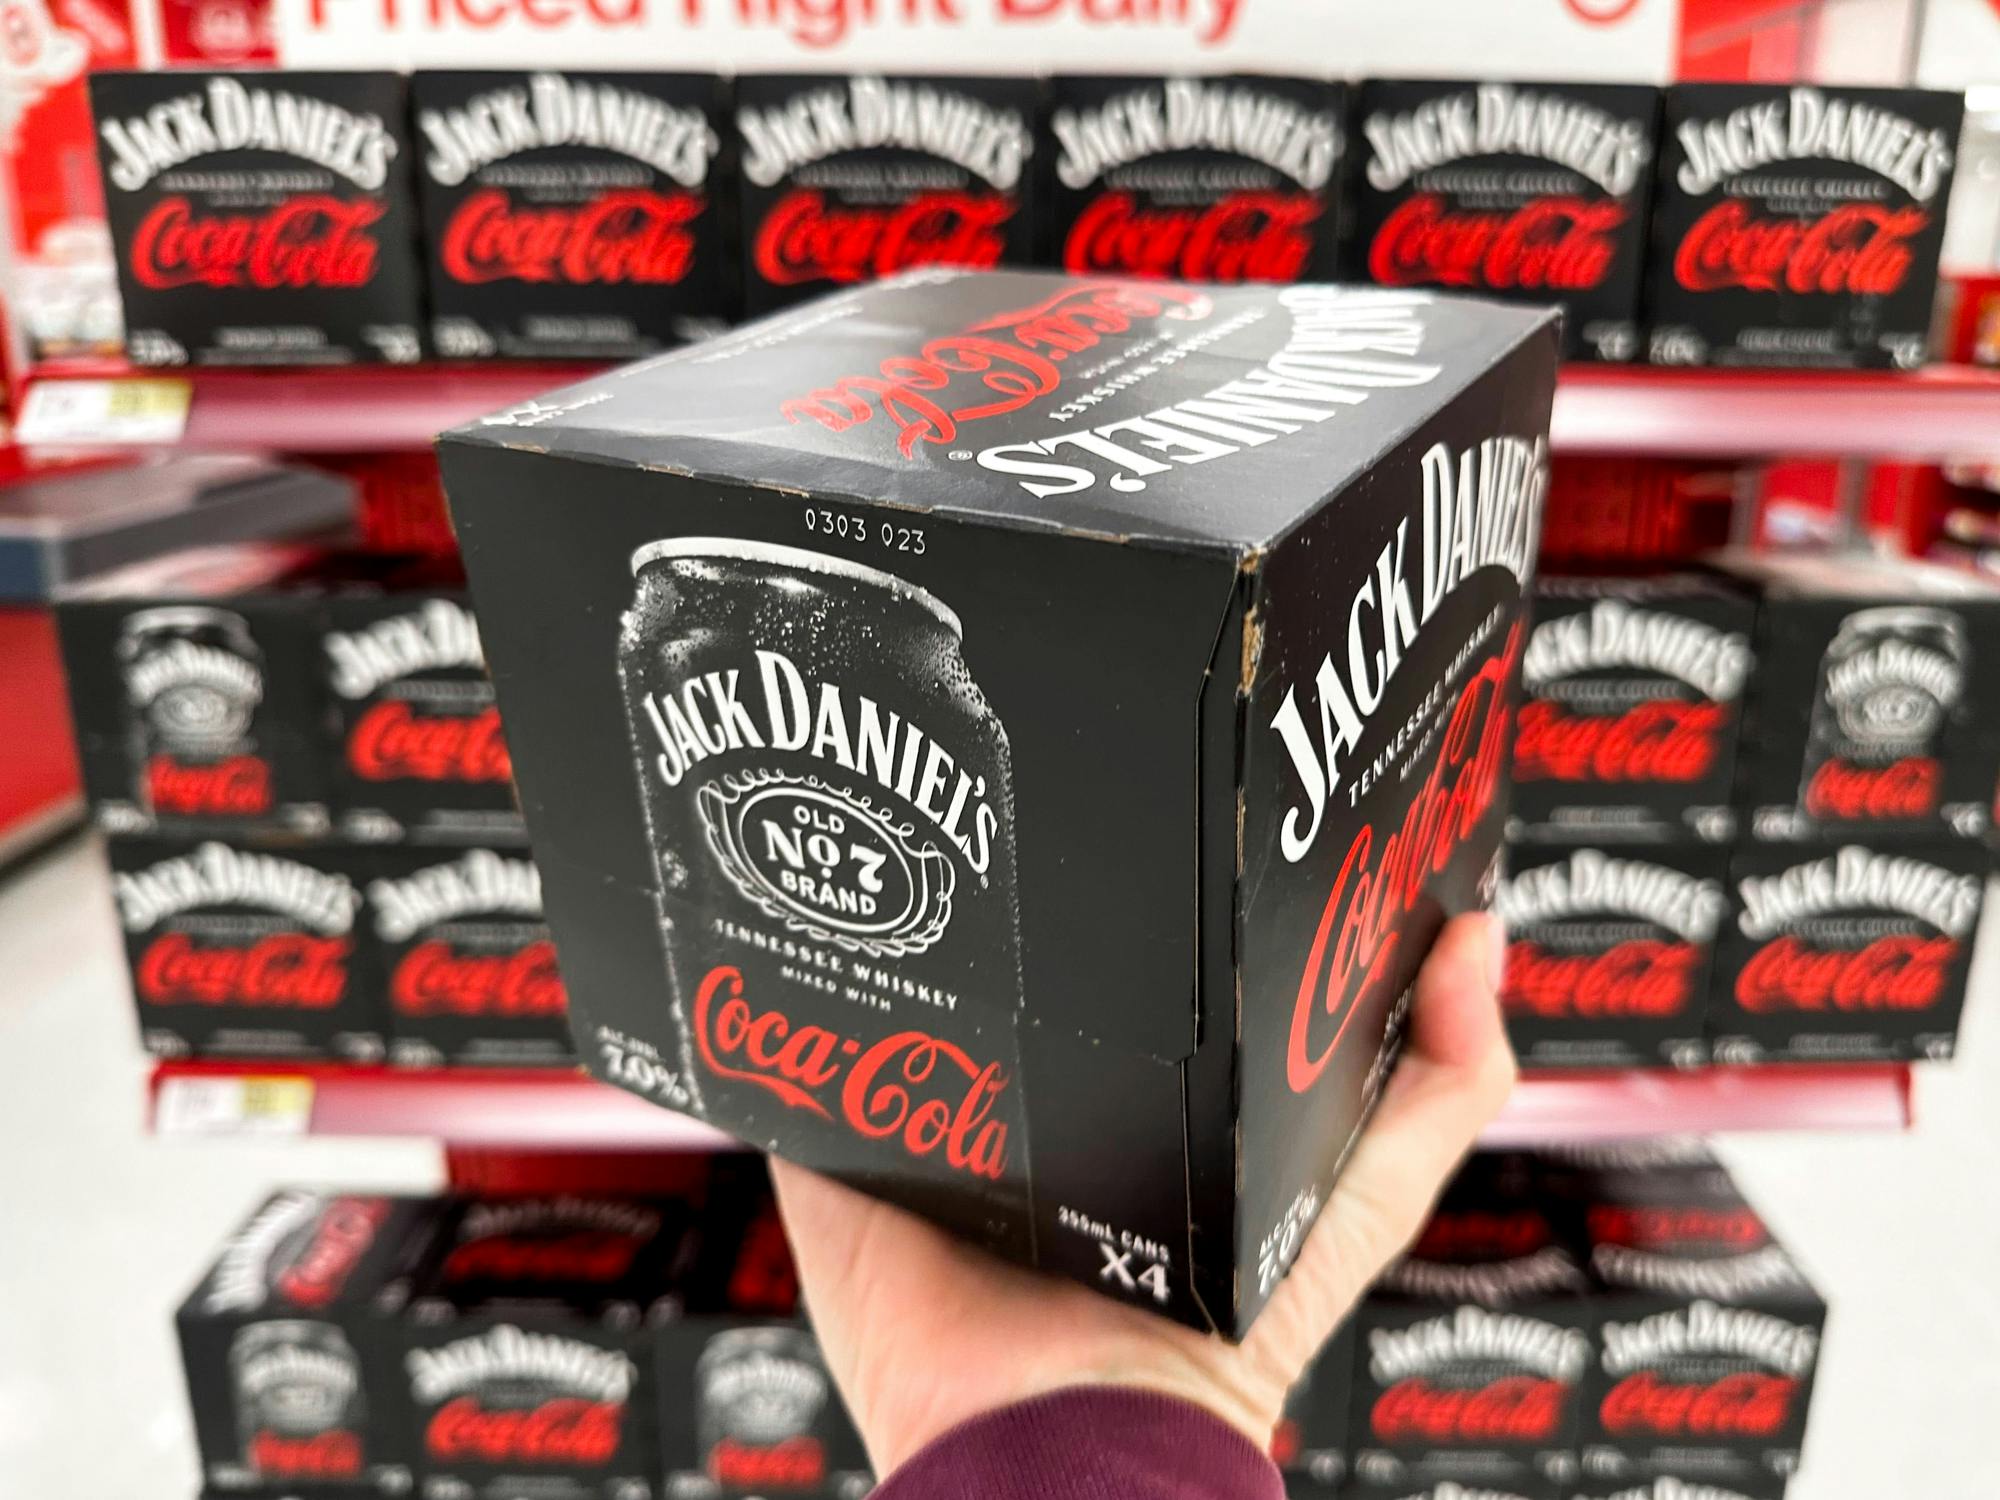 Jack Daniel's & Coke Zero 4pk 355ml Can 7% ABV